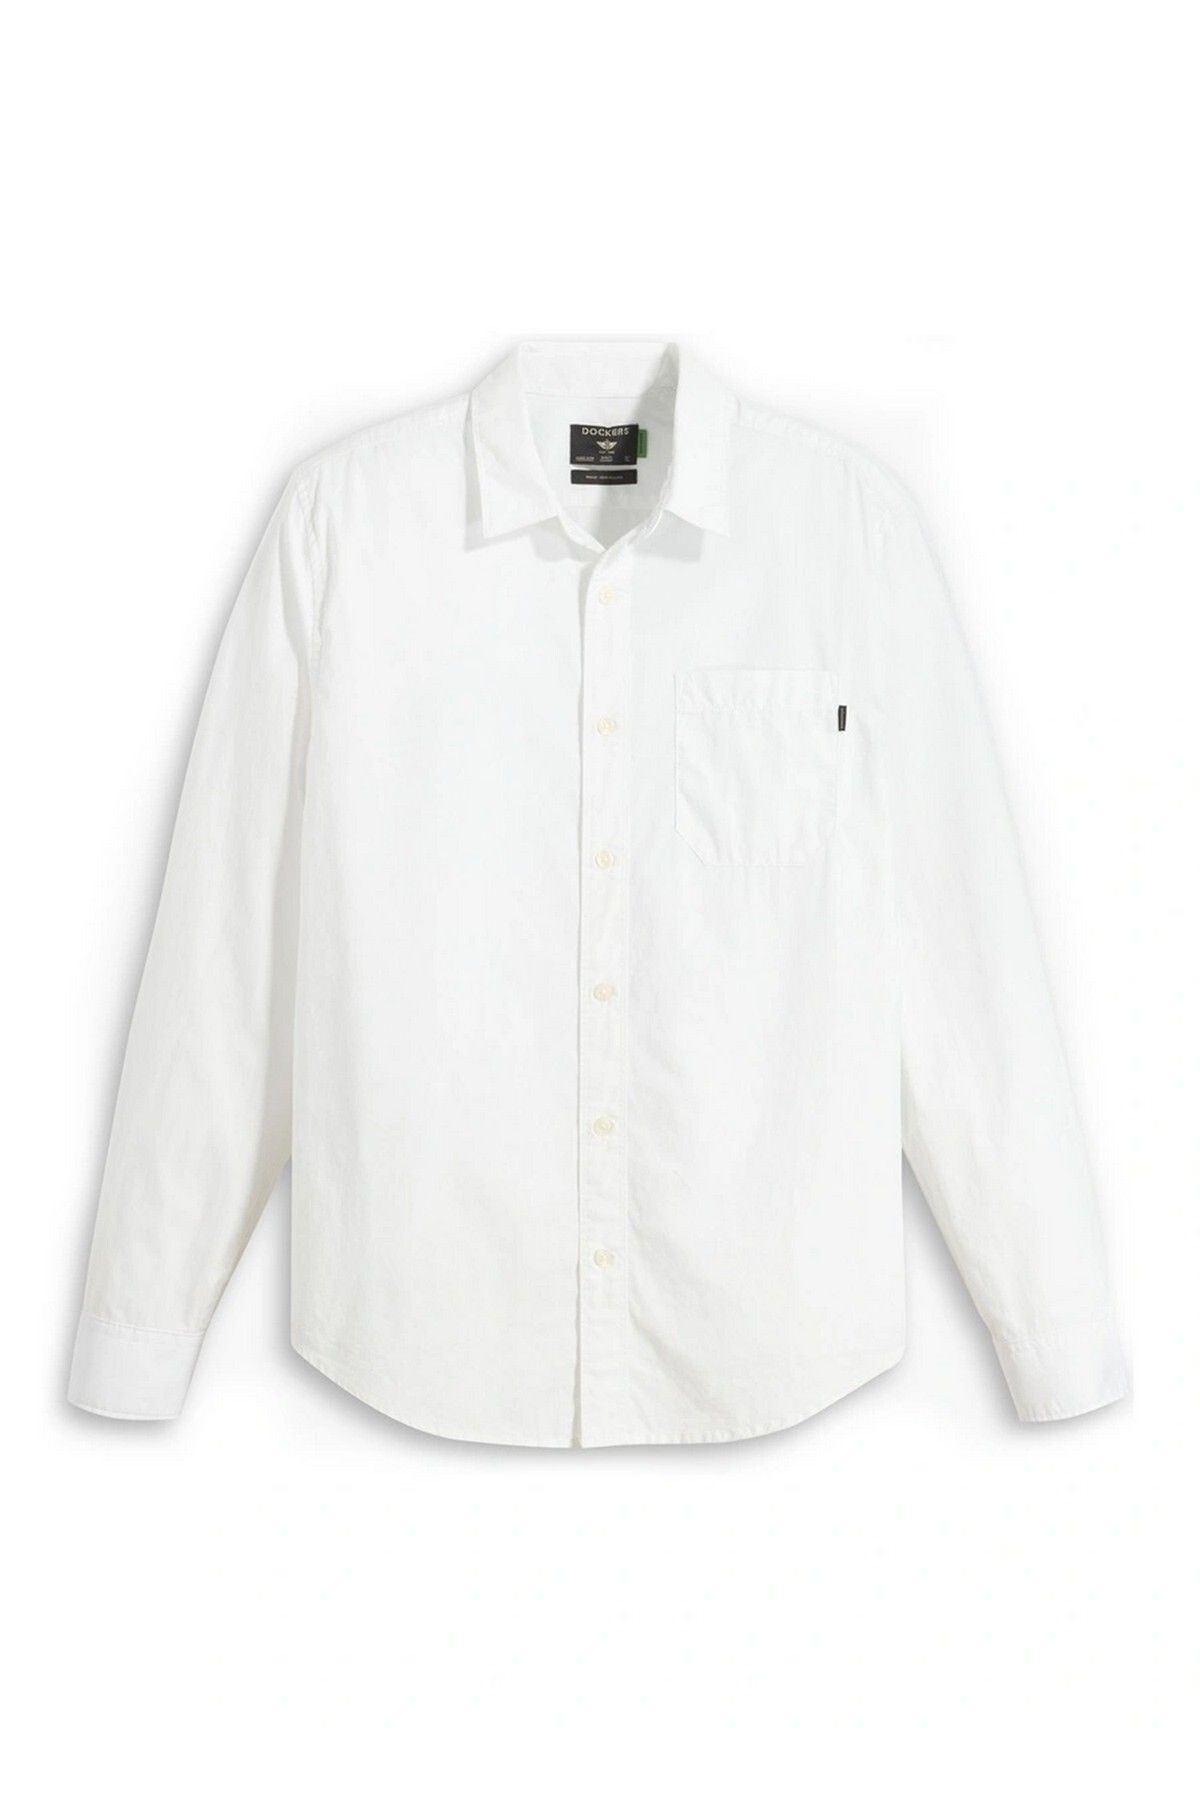 Dockers Dockers Slim Fit Beyaz Erkek %100 Pamuk Gömlek A4253-0000